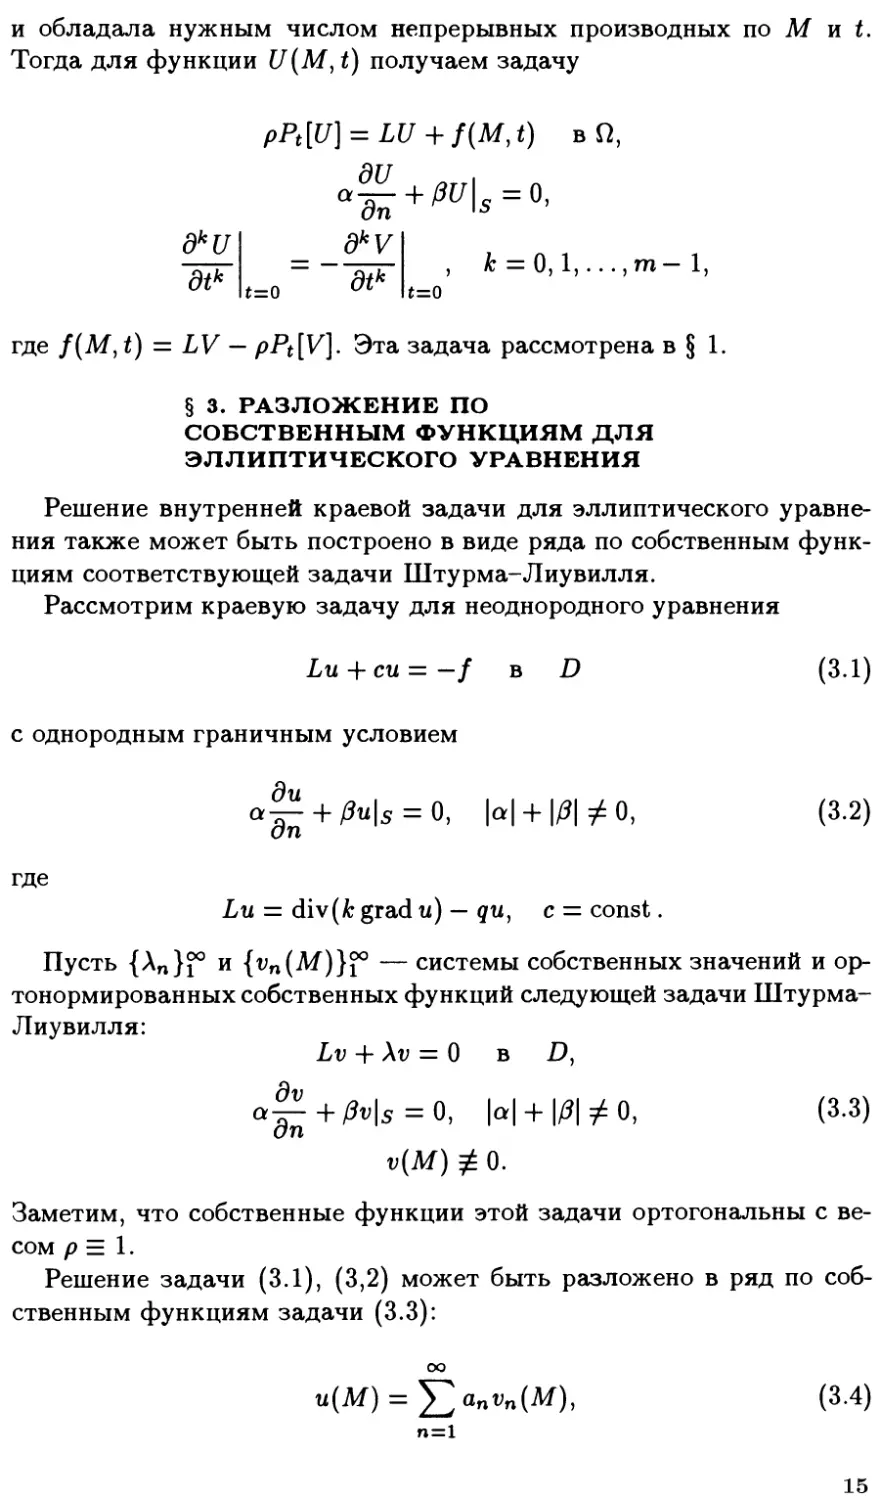 §3. Разложение по собственным функциям для эллиптического уравнения